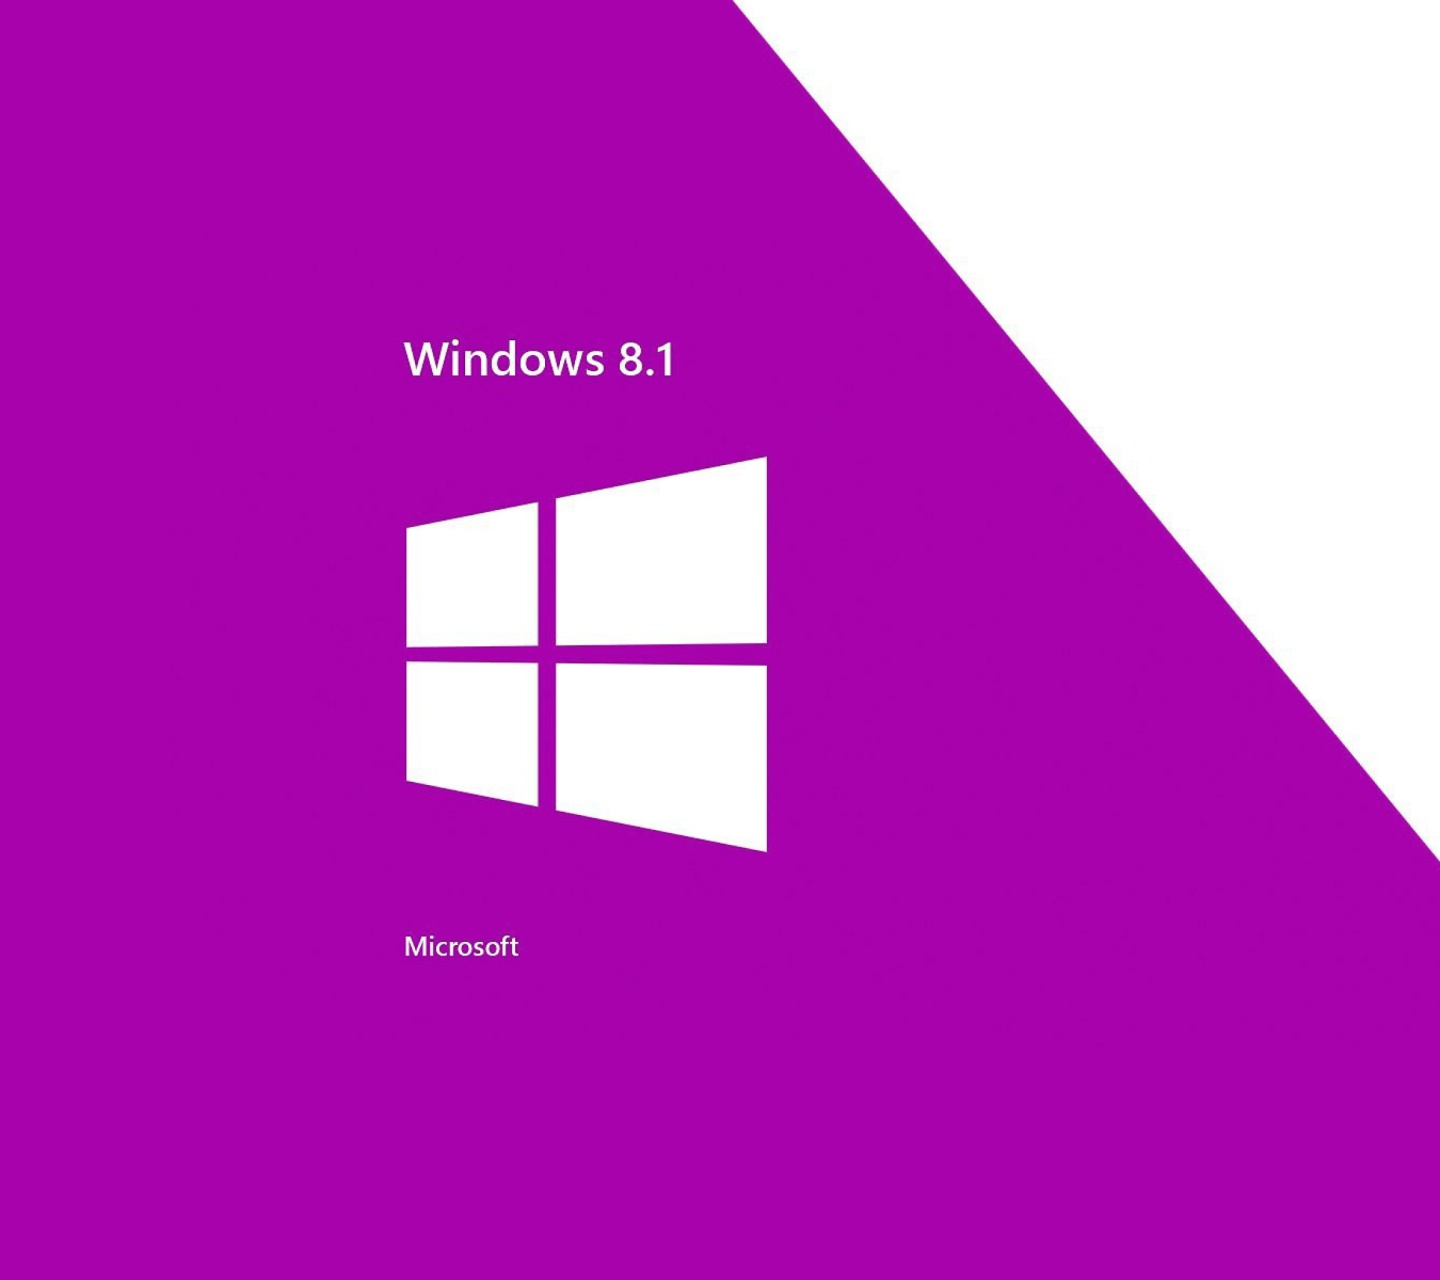 Fondo de pantalla Windows 8 1440x1280